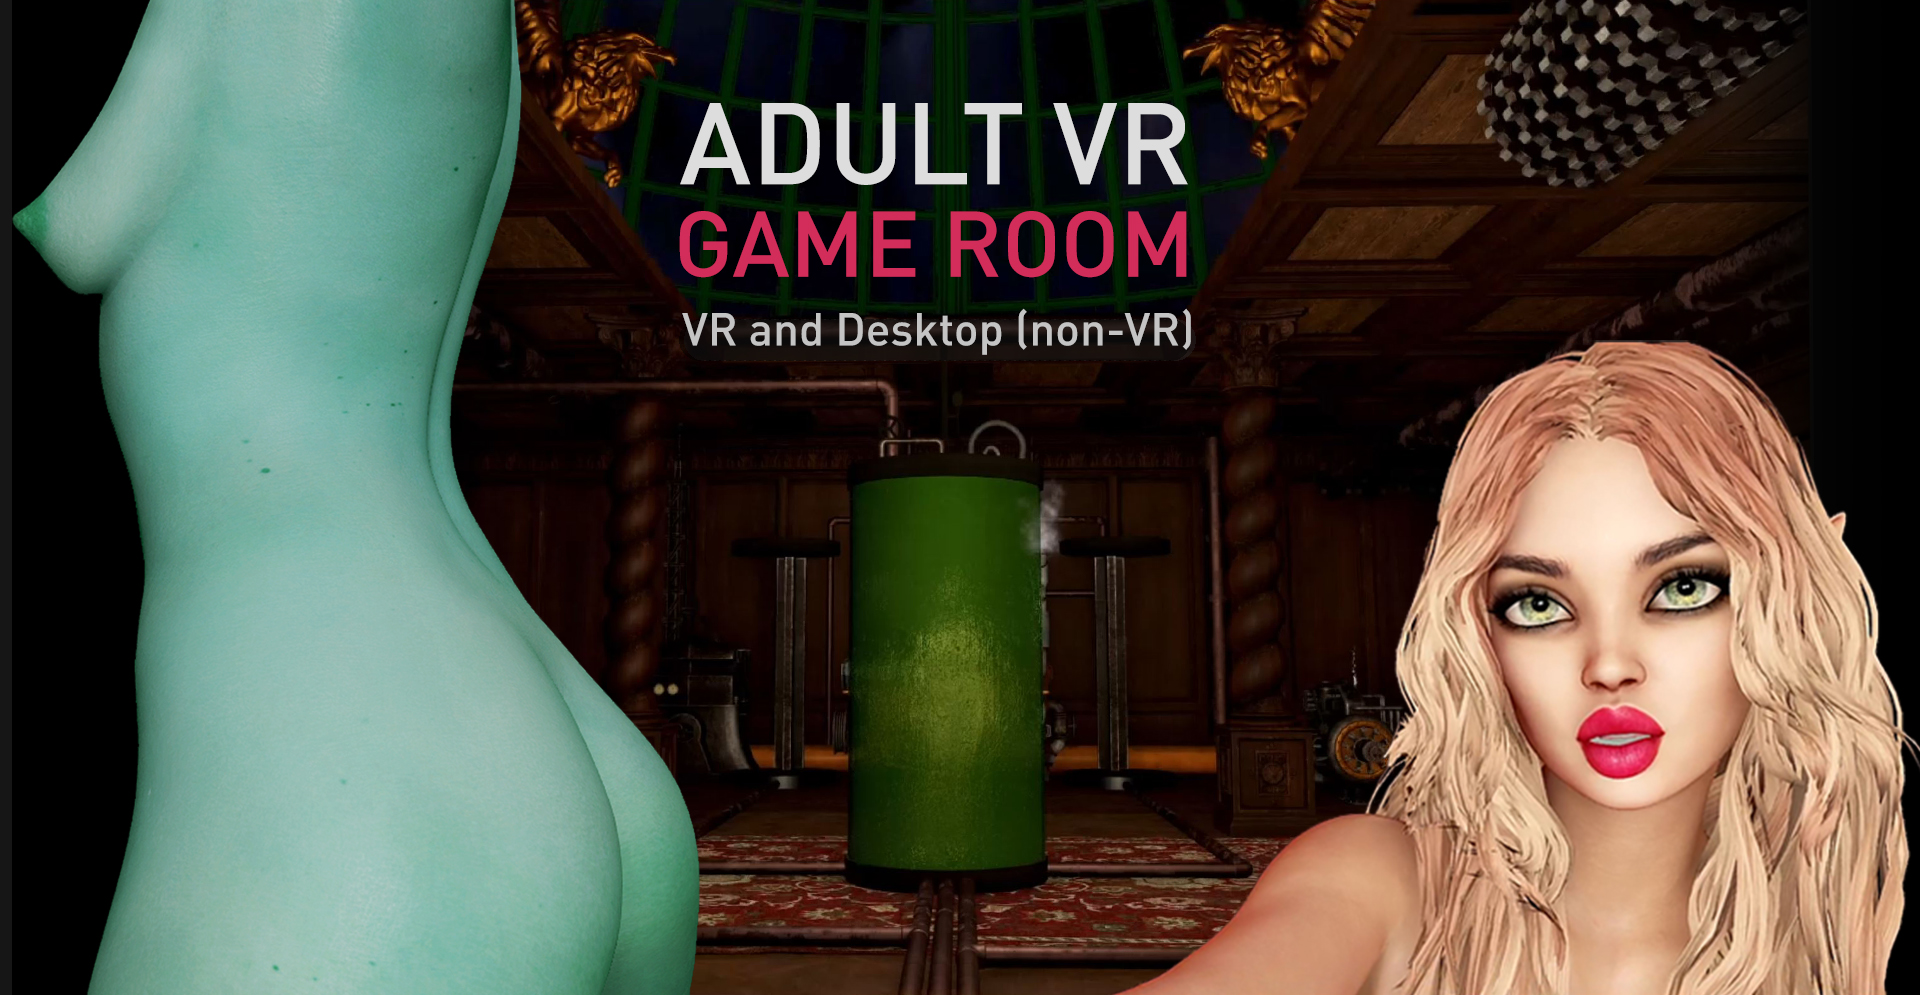 Adult VR Game Room - Limited Steam Offer